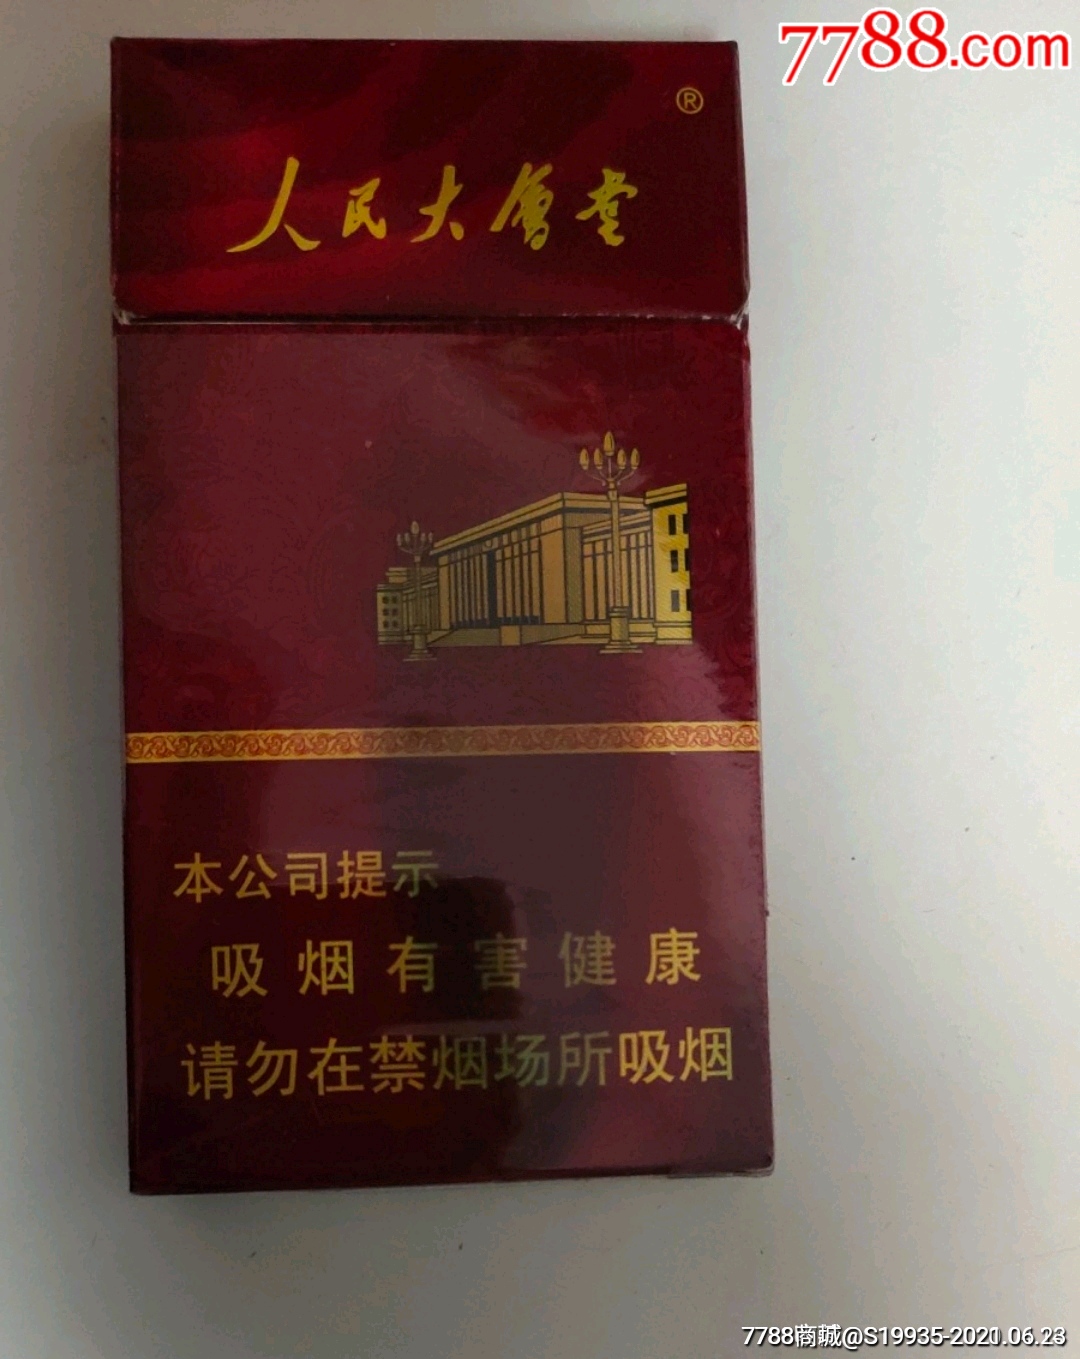 人民大会堂香烟黄盒图片